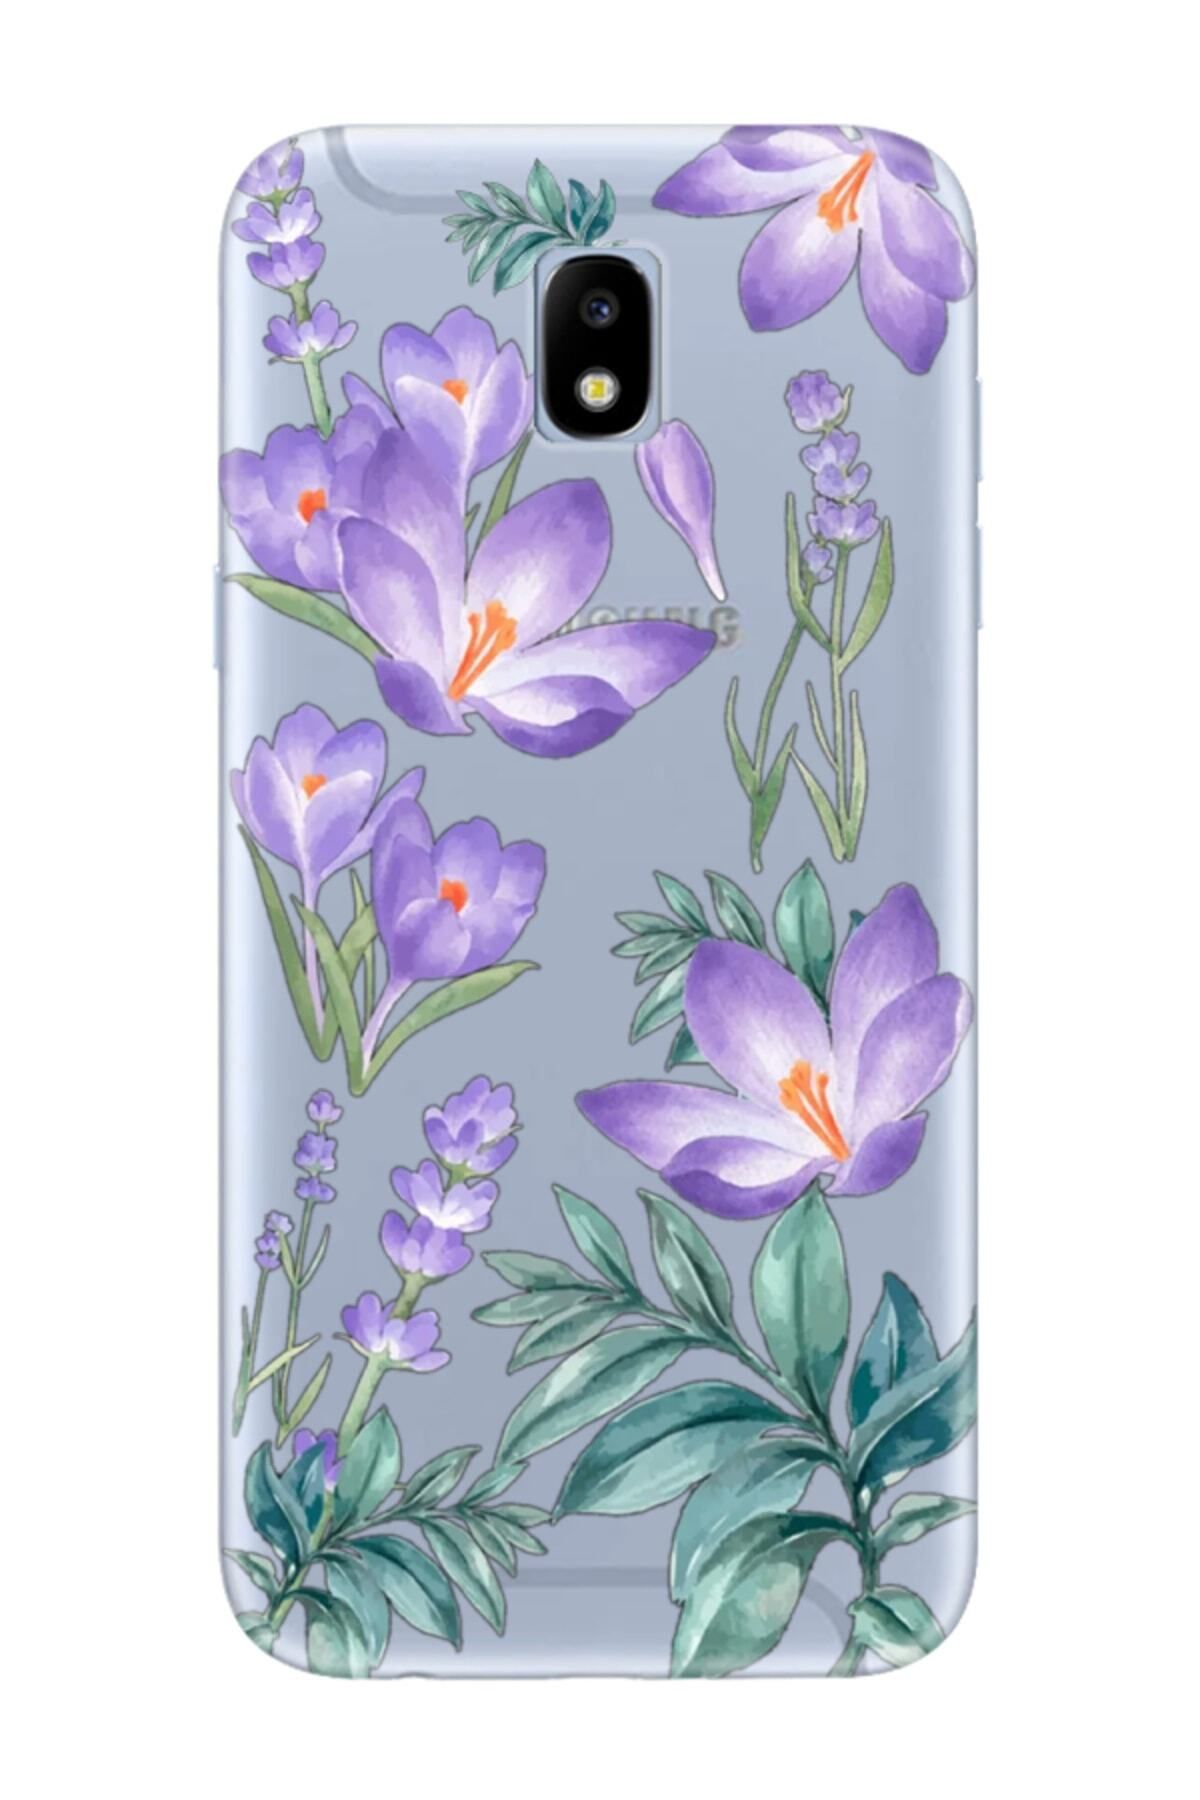 frondcase Samsung J7 Pro Kış Çiçeği Şeffaf Telefon Kılıfı